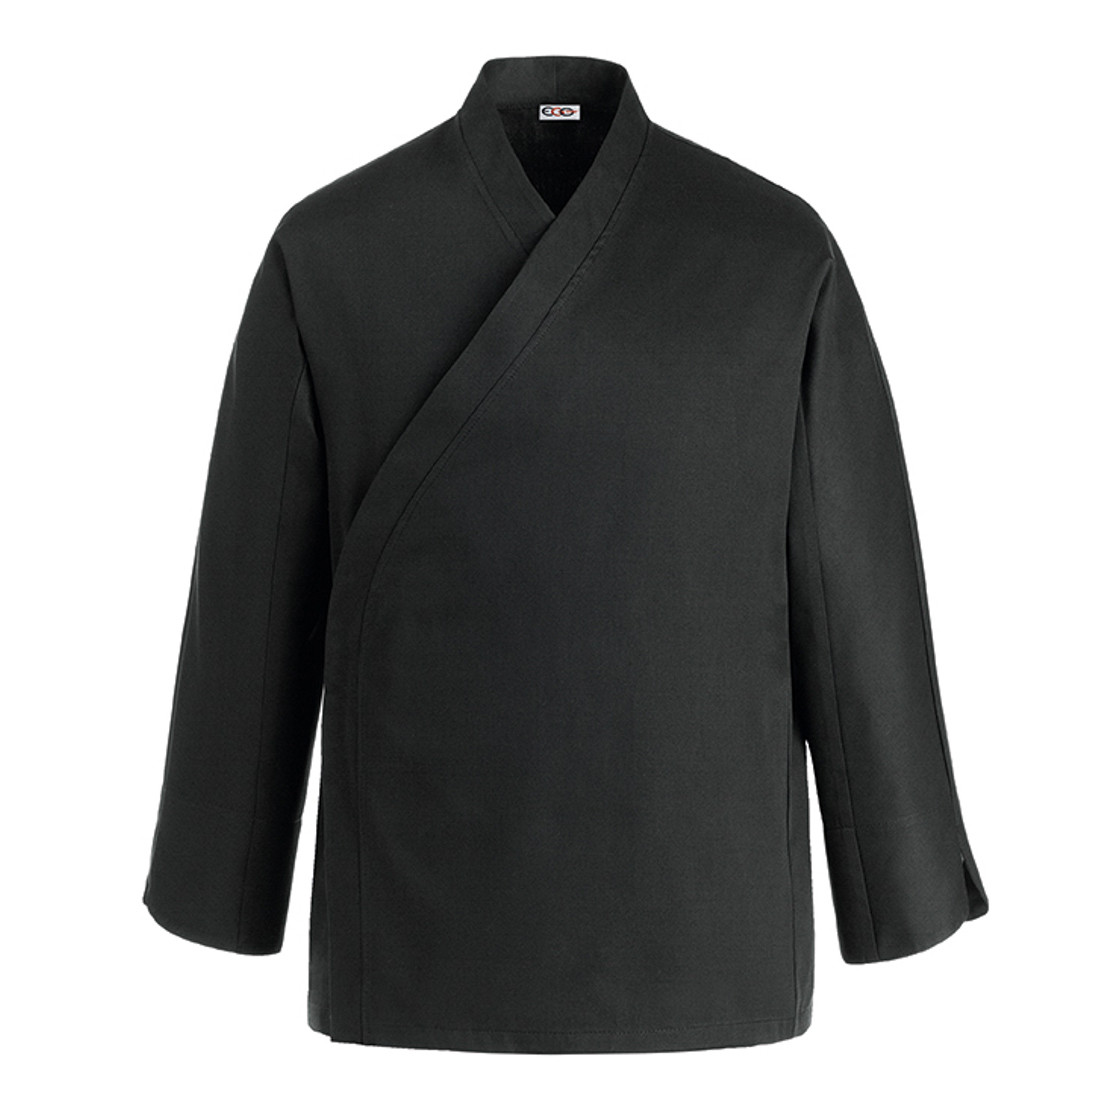 Veste chef Sushi, 65% polyester/35% coton - Les vêtements de protection